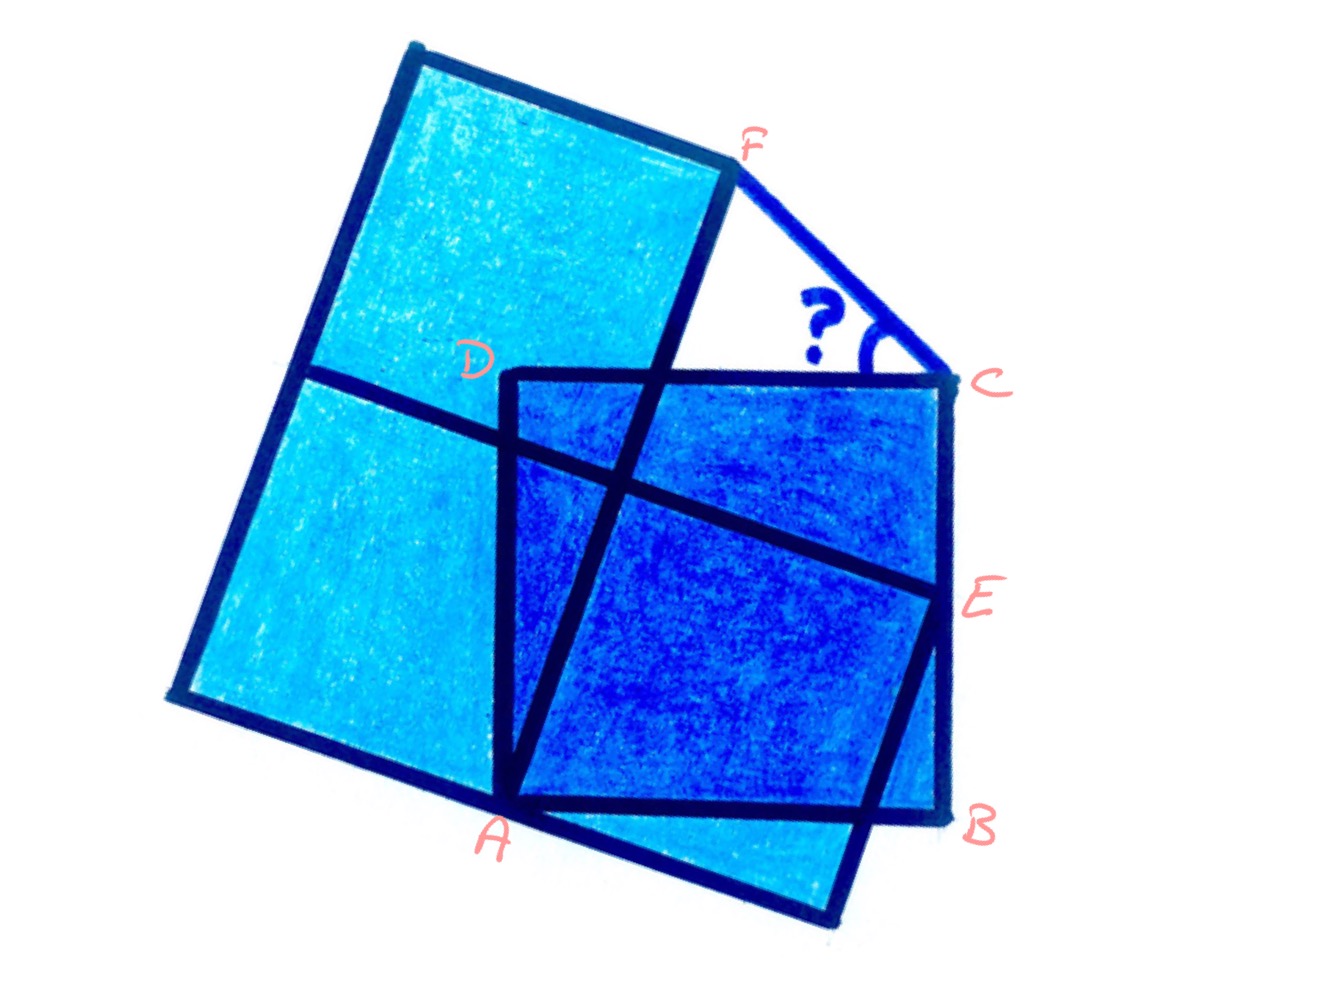 Four squares iv rotated